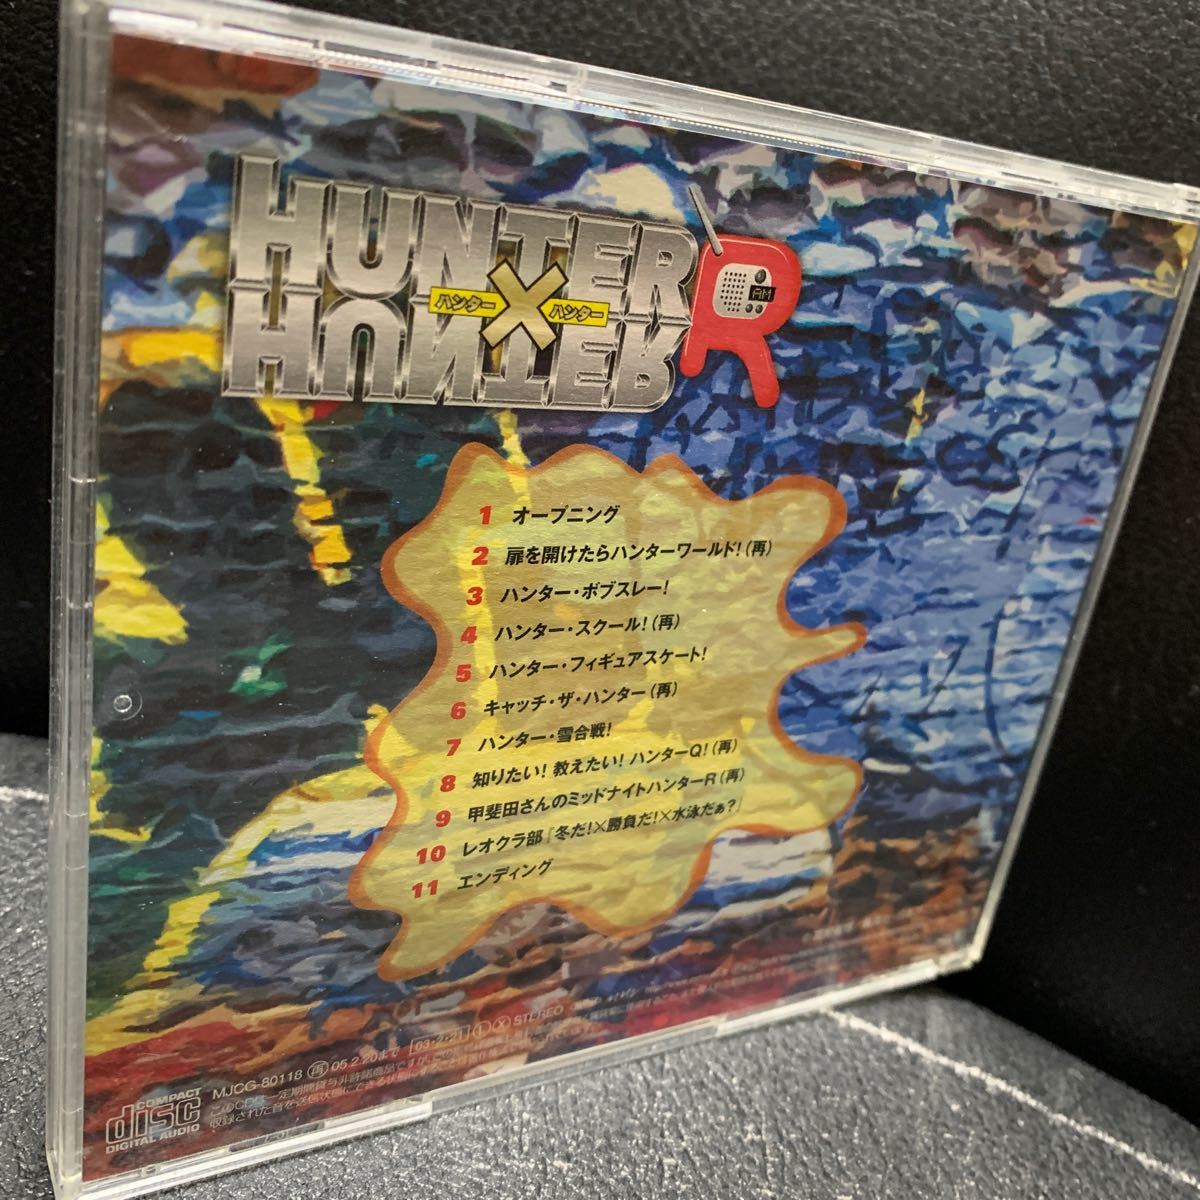 [HUNTER×HUNTER] Hunter × Hunter R радио CD серии VOL.12